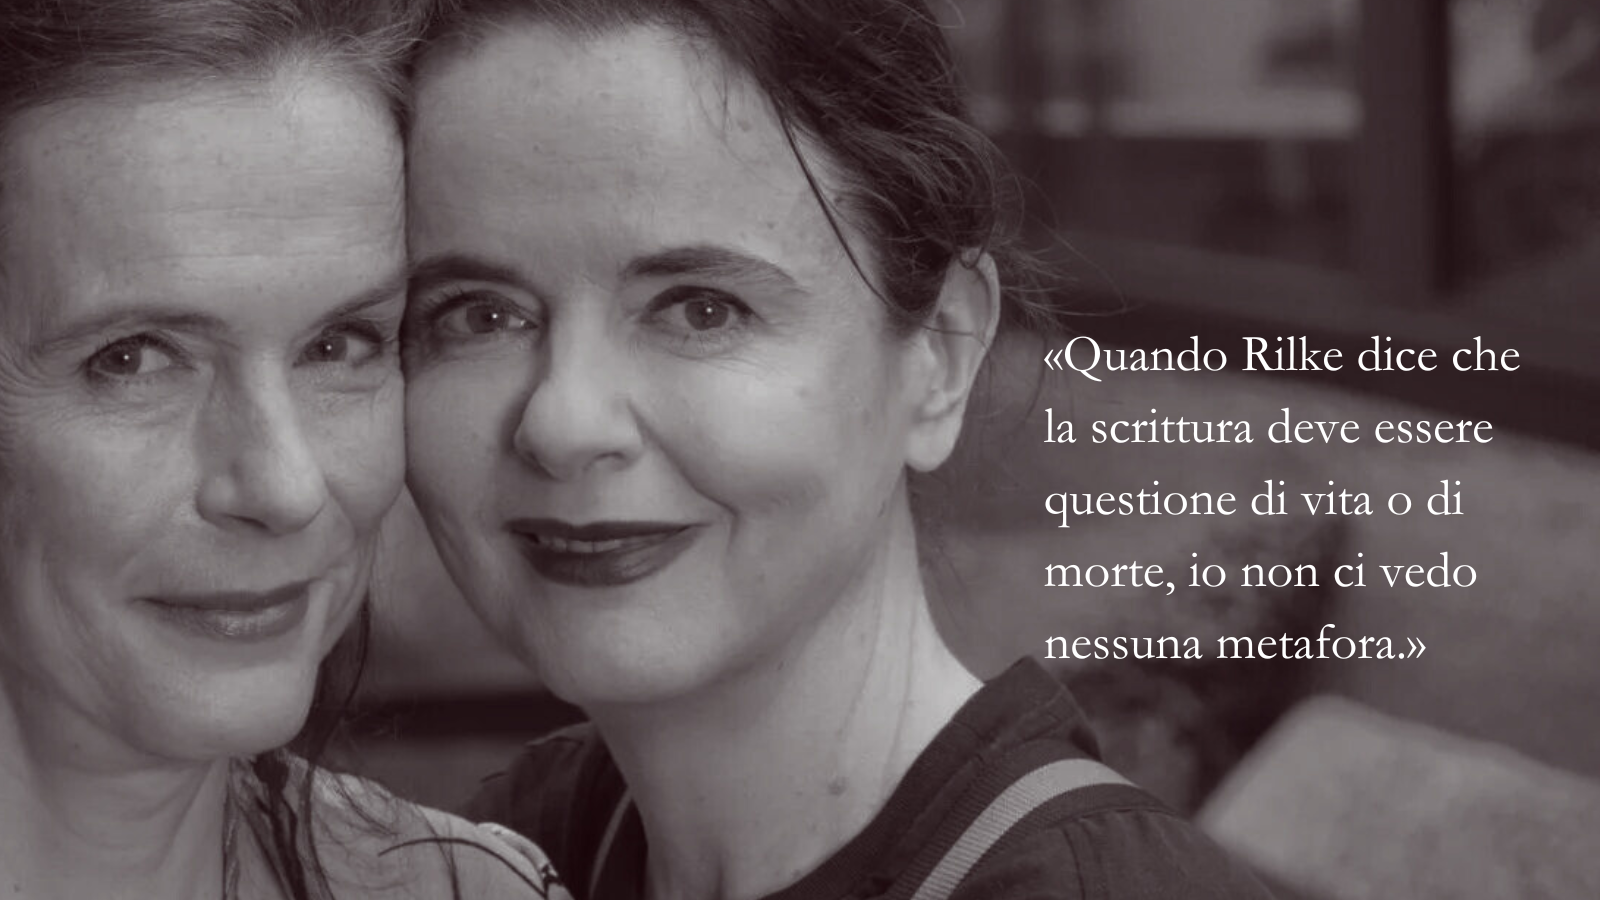 Amélie e Juliette Nothomb: le esperienze di vita dietro la parola stampata